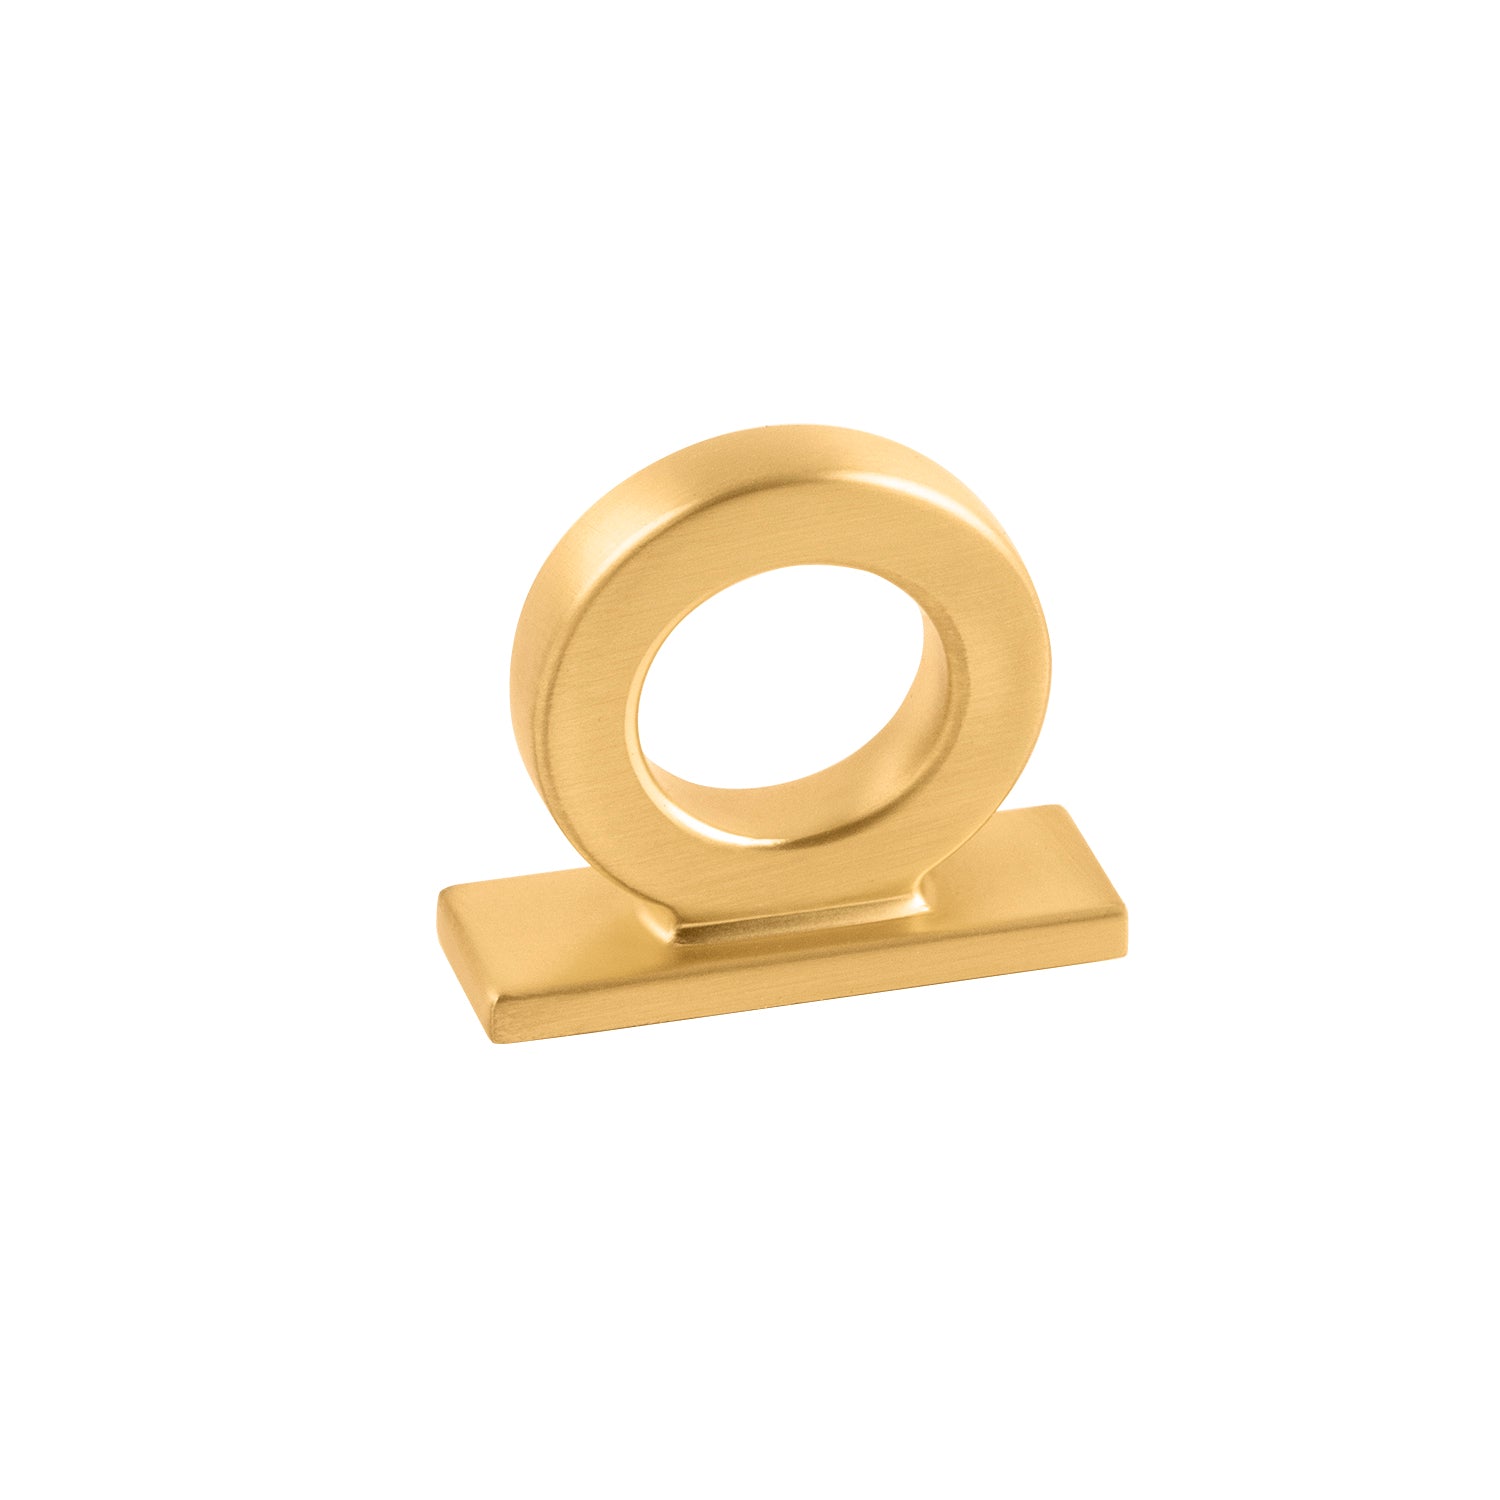 brushed golden brass knob